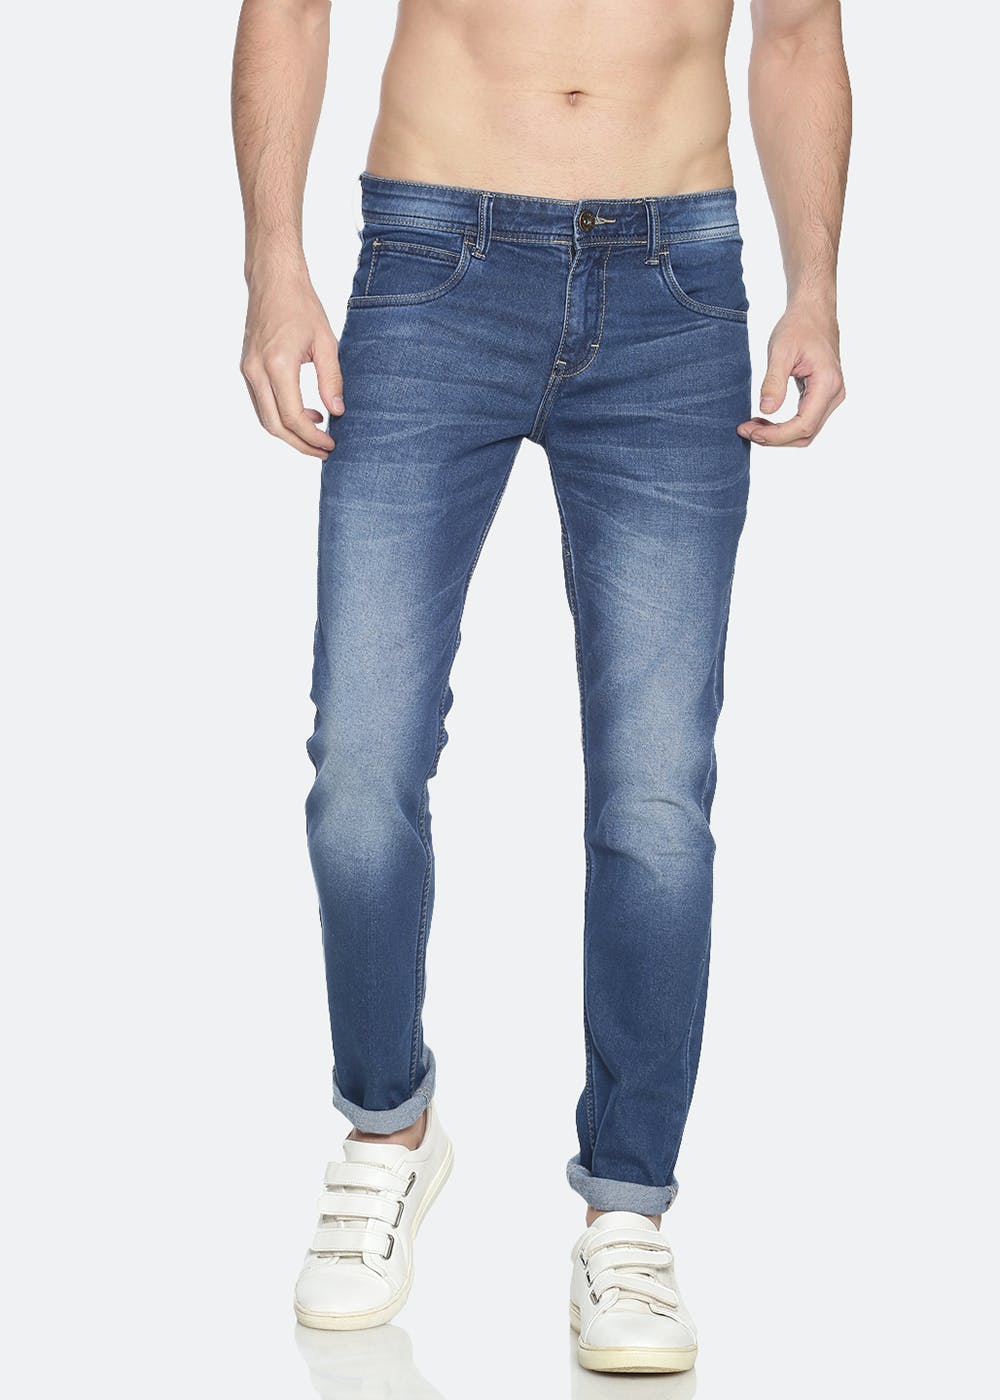 Get Denim Washed Blue Jeans at ₹ 959 | LBB Shop